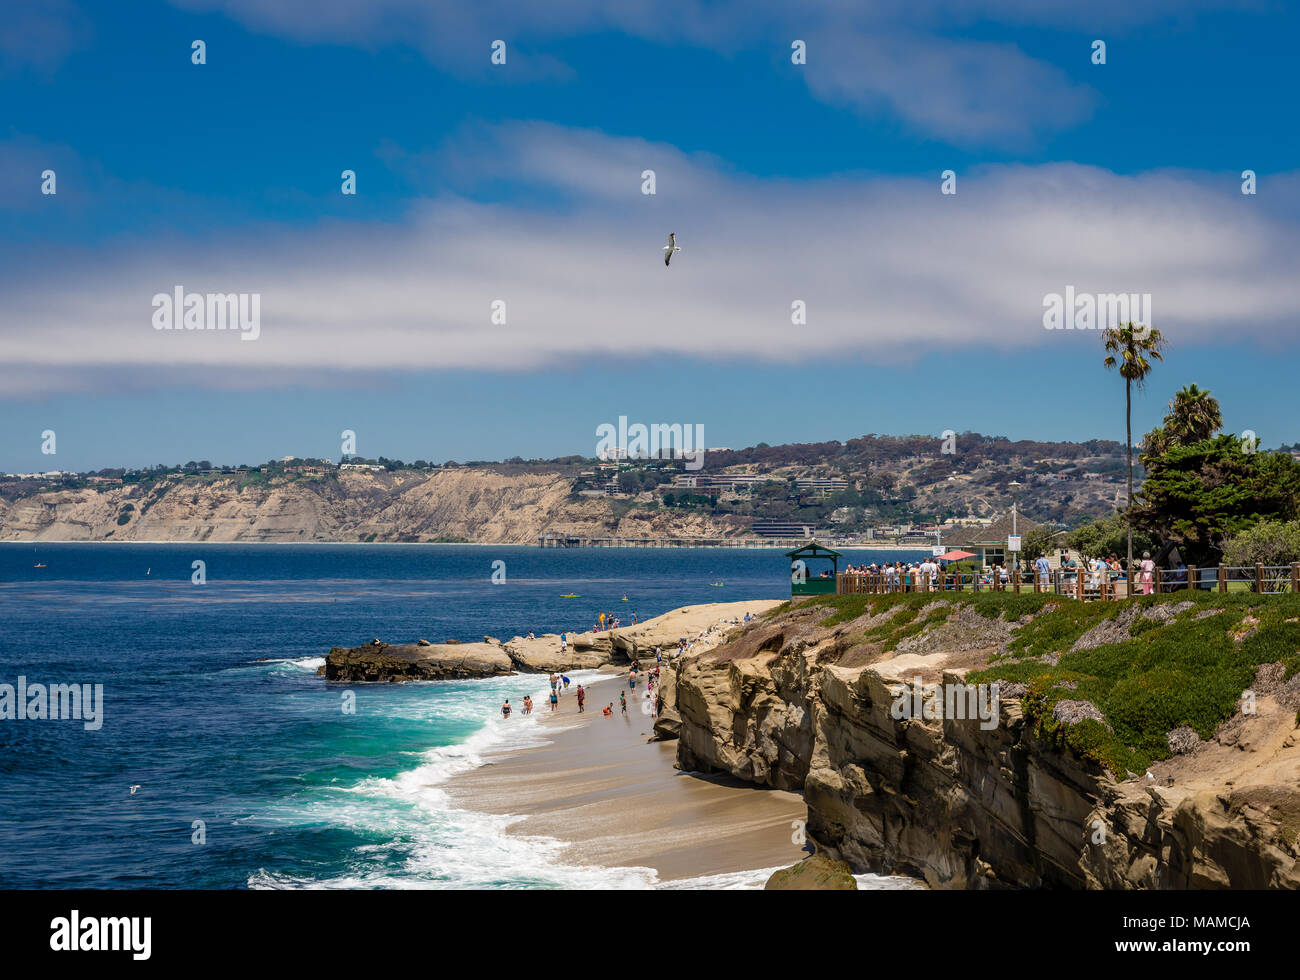 View of La Jolla Cove, San Diego, CA. Stock Photo